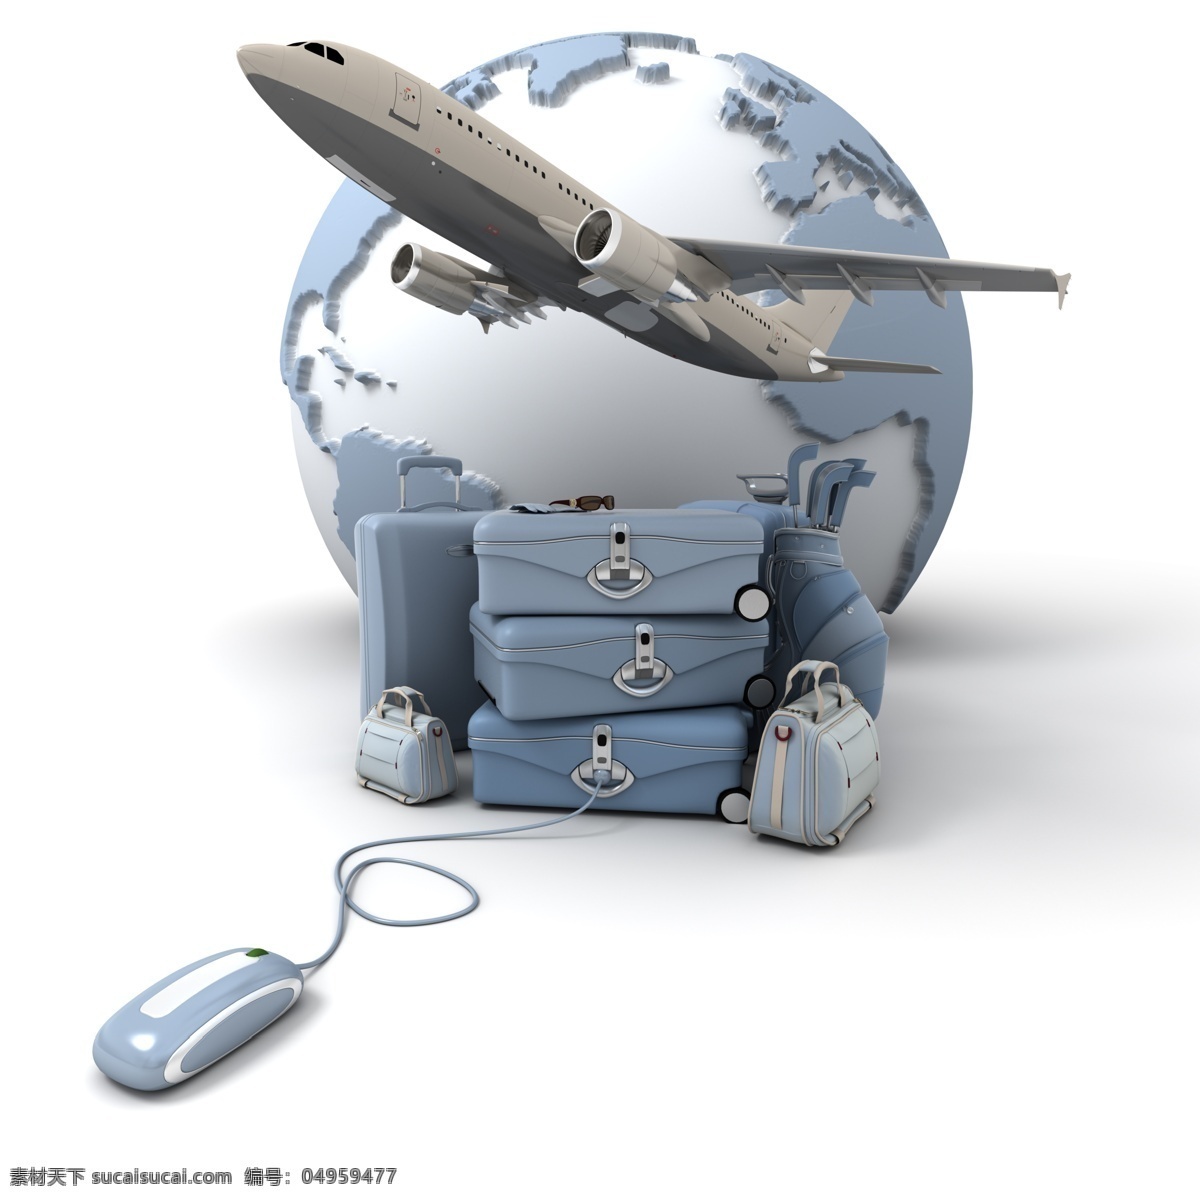 飞机 地球 地球模型 客机 皮箱 箱子 鼠标 交通工具 地球图片 环境家居